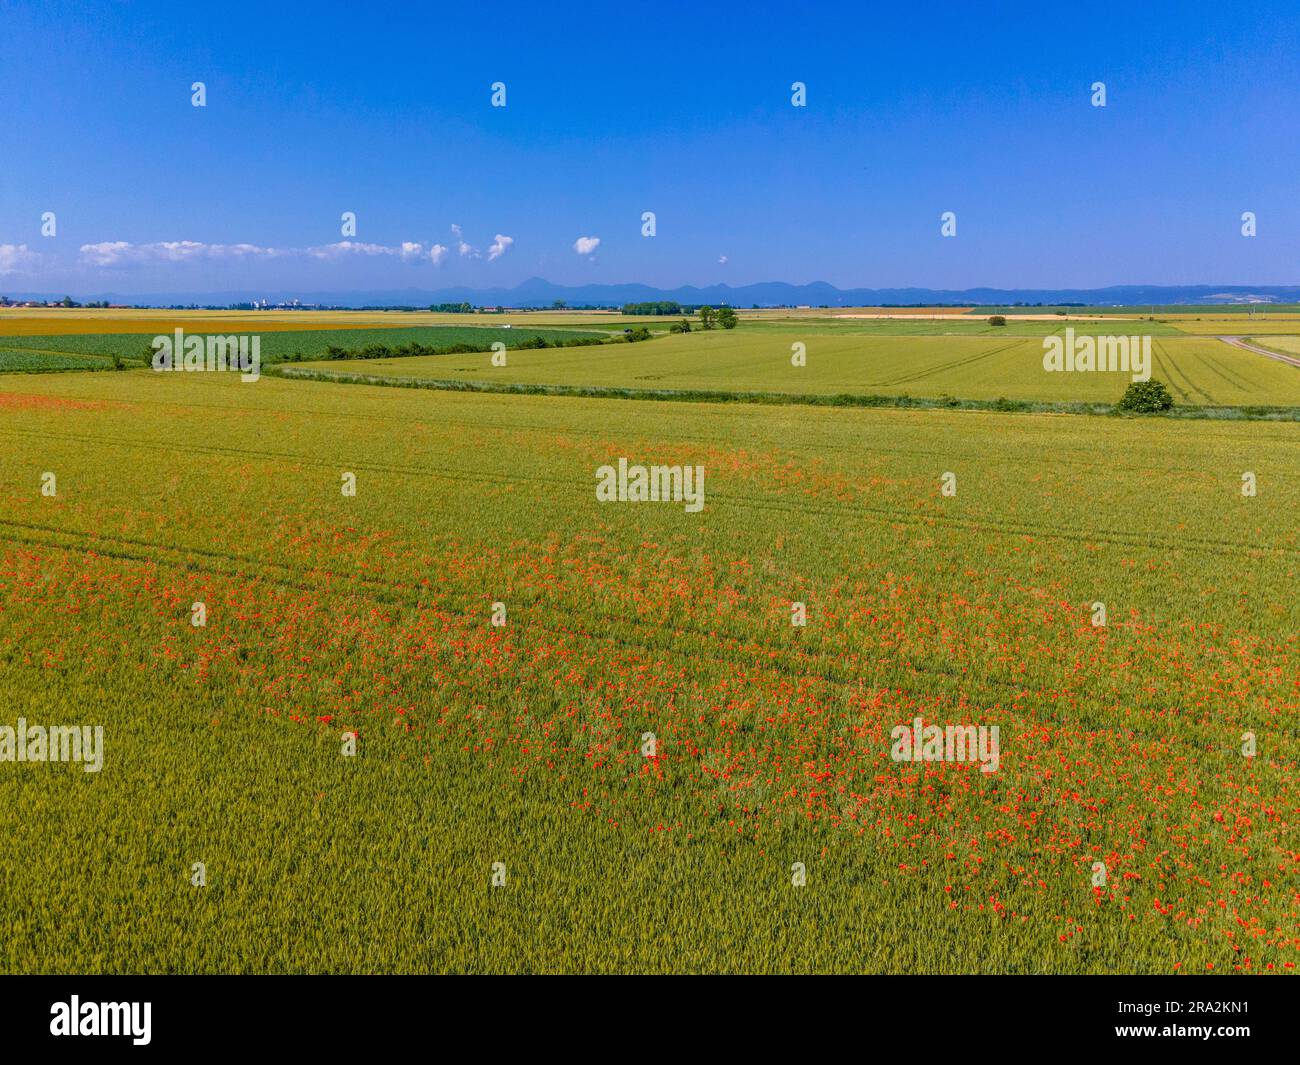 France, Puy de Dome, les Martres d'Artière, paysage agricole de la plaine de la Limagne, près de Riom, chaîne des Puys en arrière-plan (vue aérienne) Banque D'Images